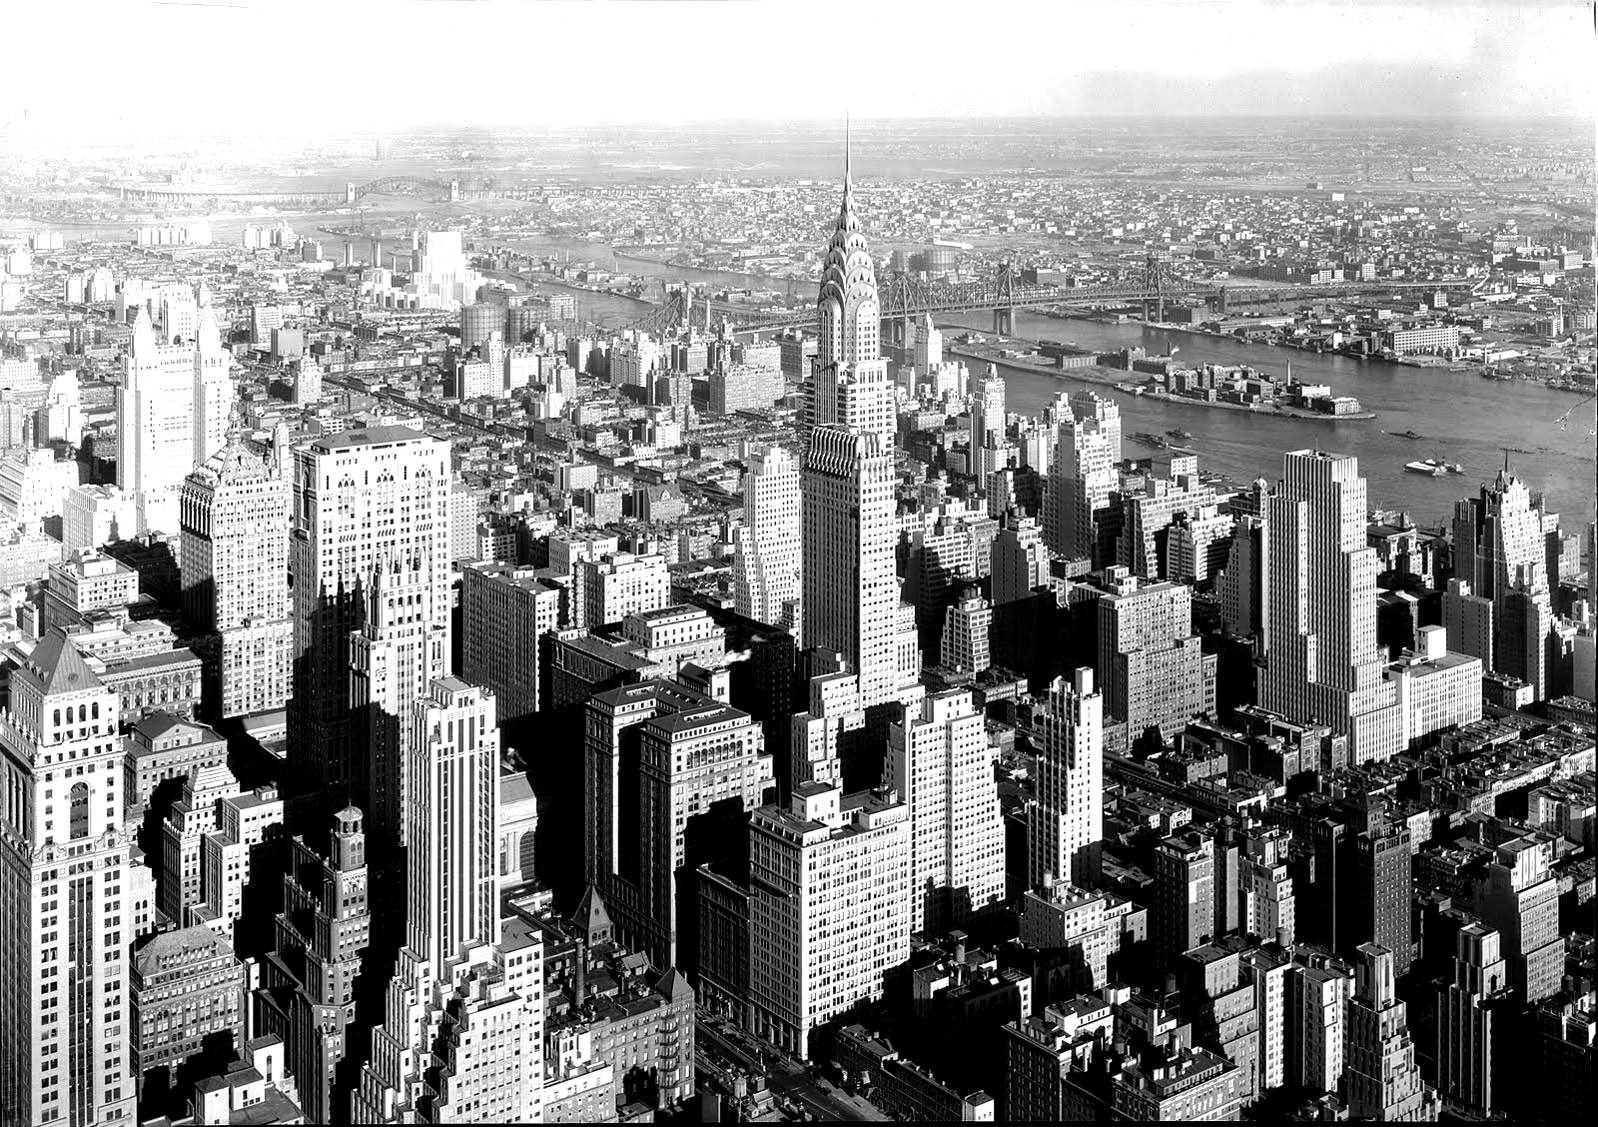 Magnifique prise de vue aérienne de New York, avec au milieu la Chysler Tower et sa pointe fine